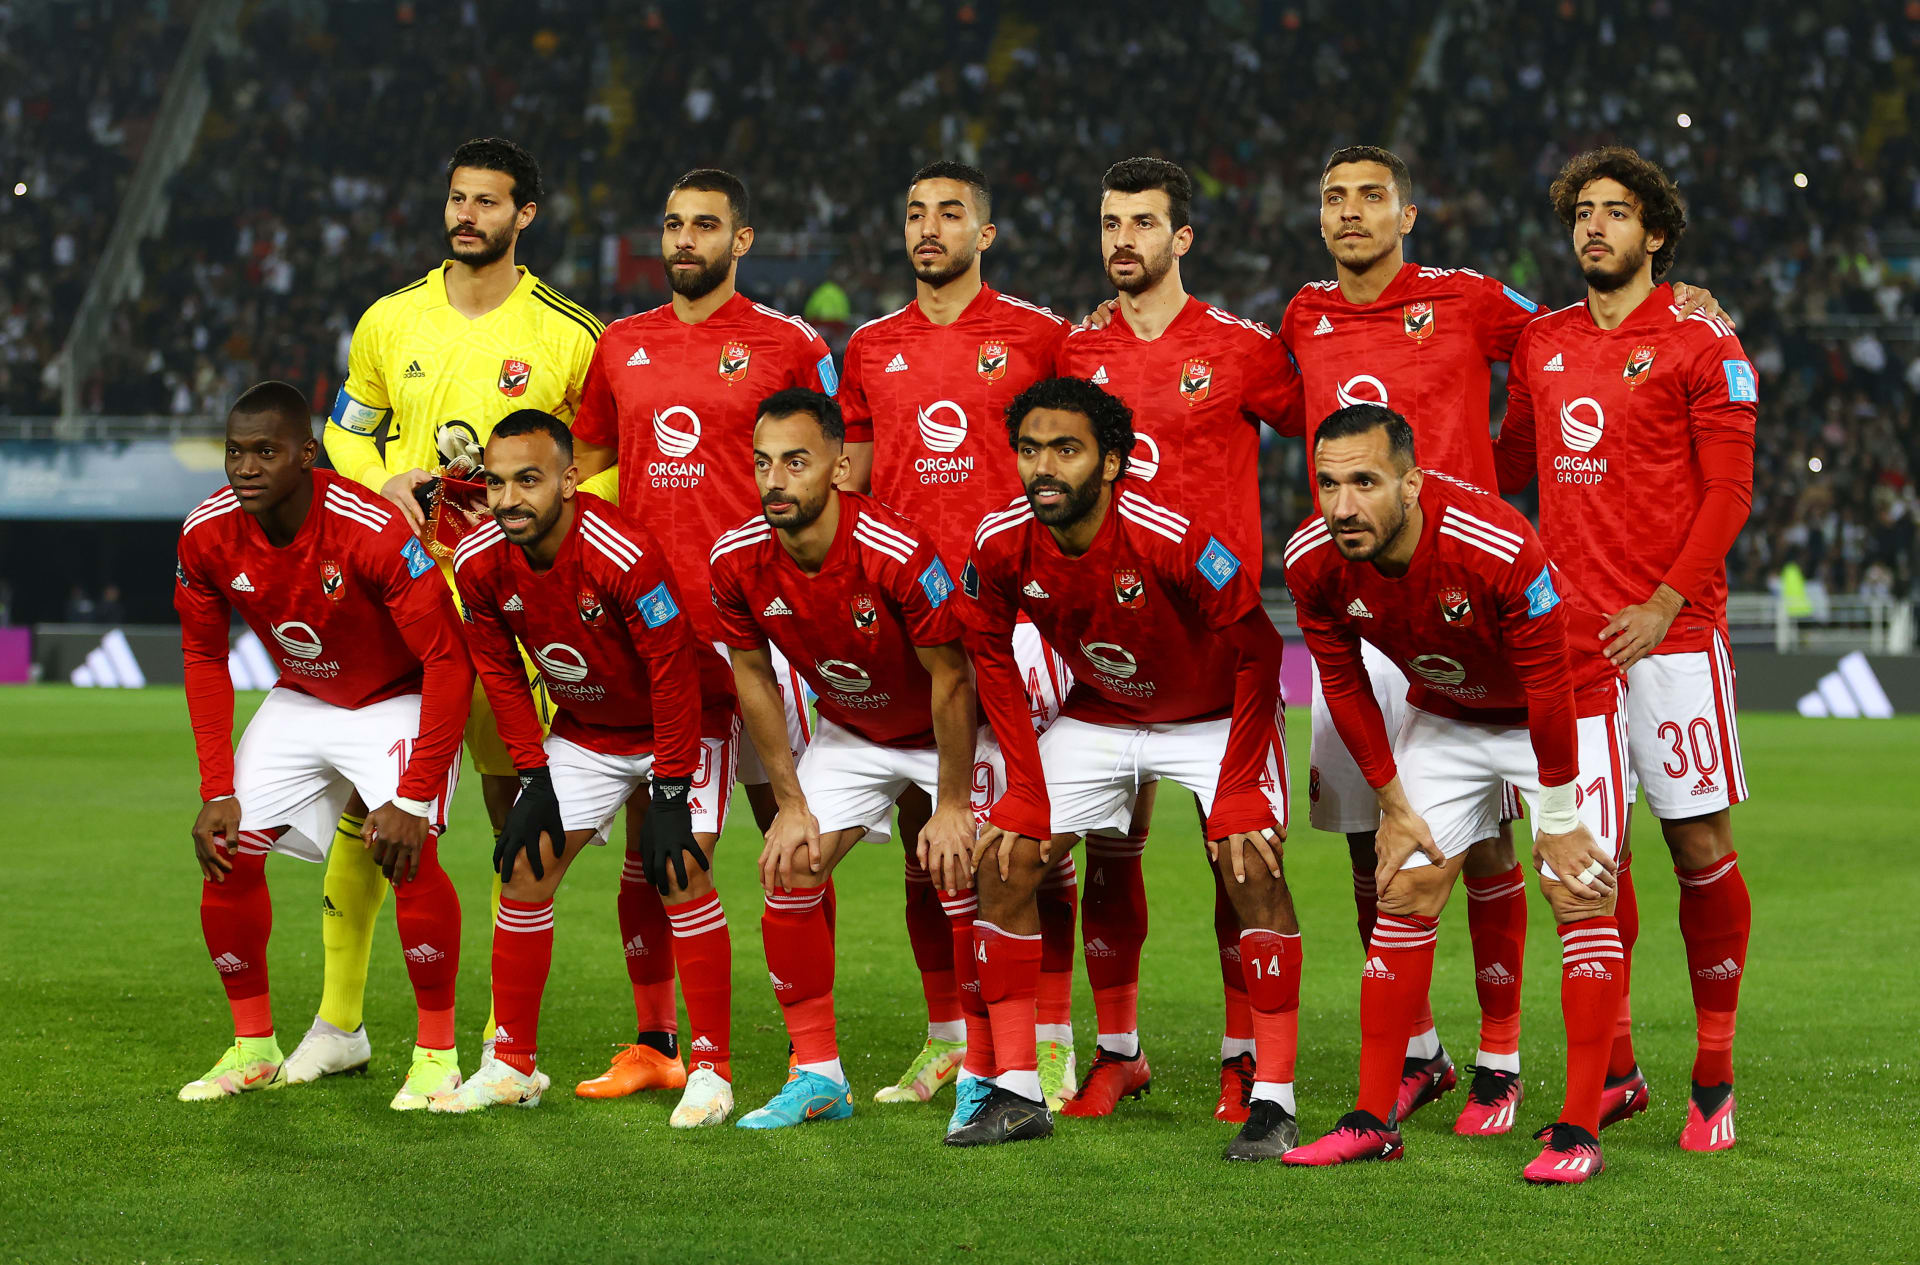 هل يشعر لاعبو الأهلي المصري بـ "حالة تشبع" من الألقاب؟ مارسيل كولر يرد